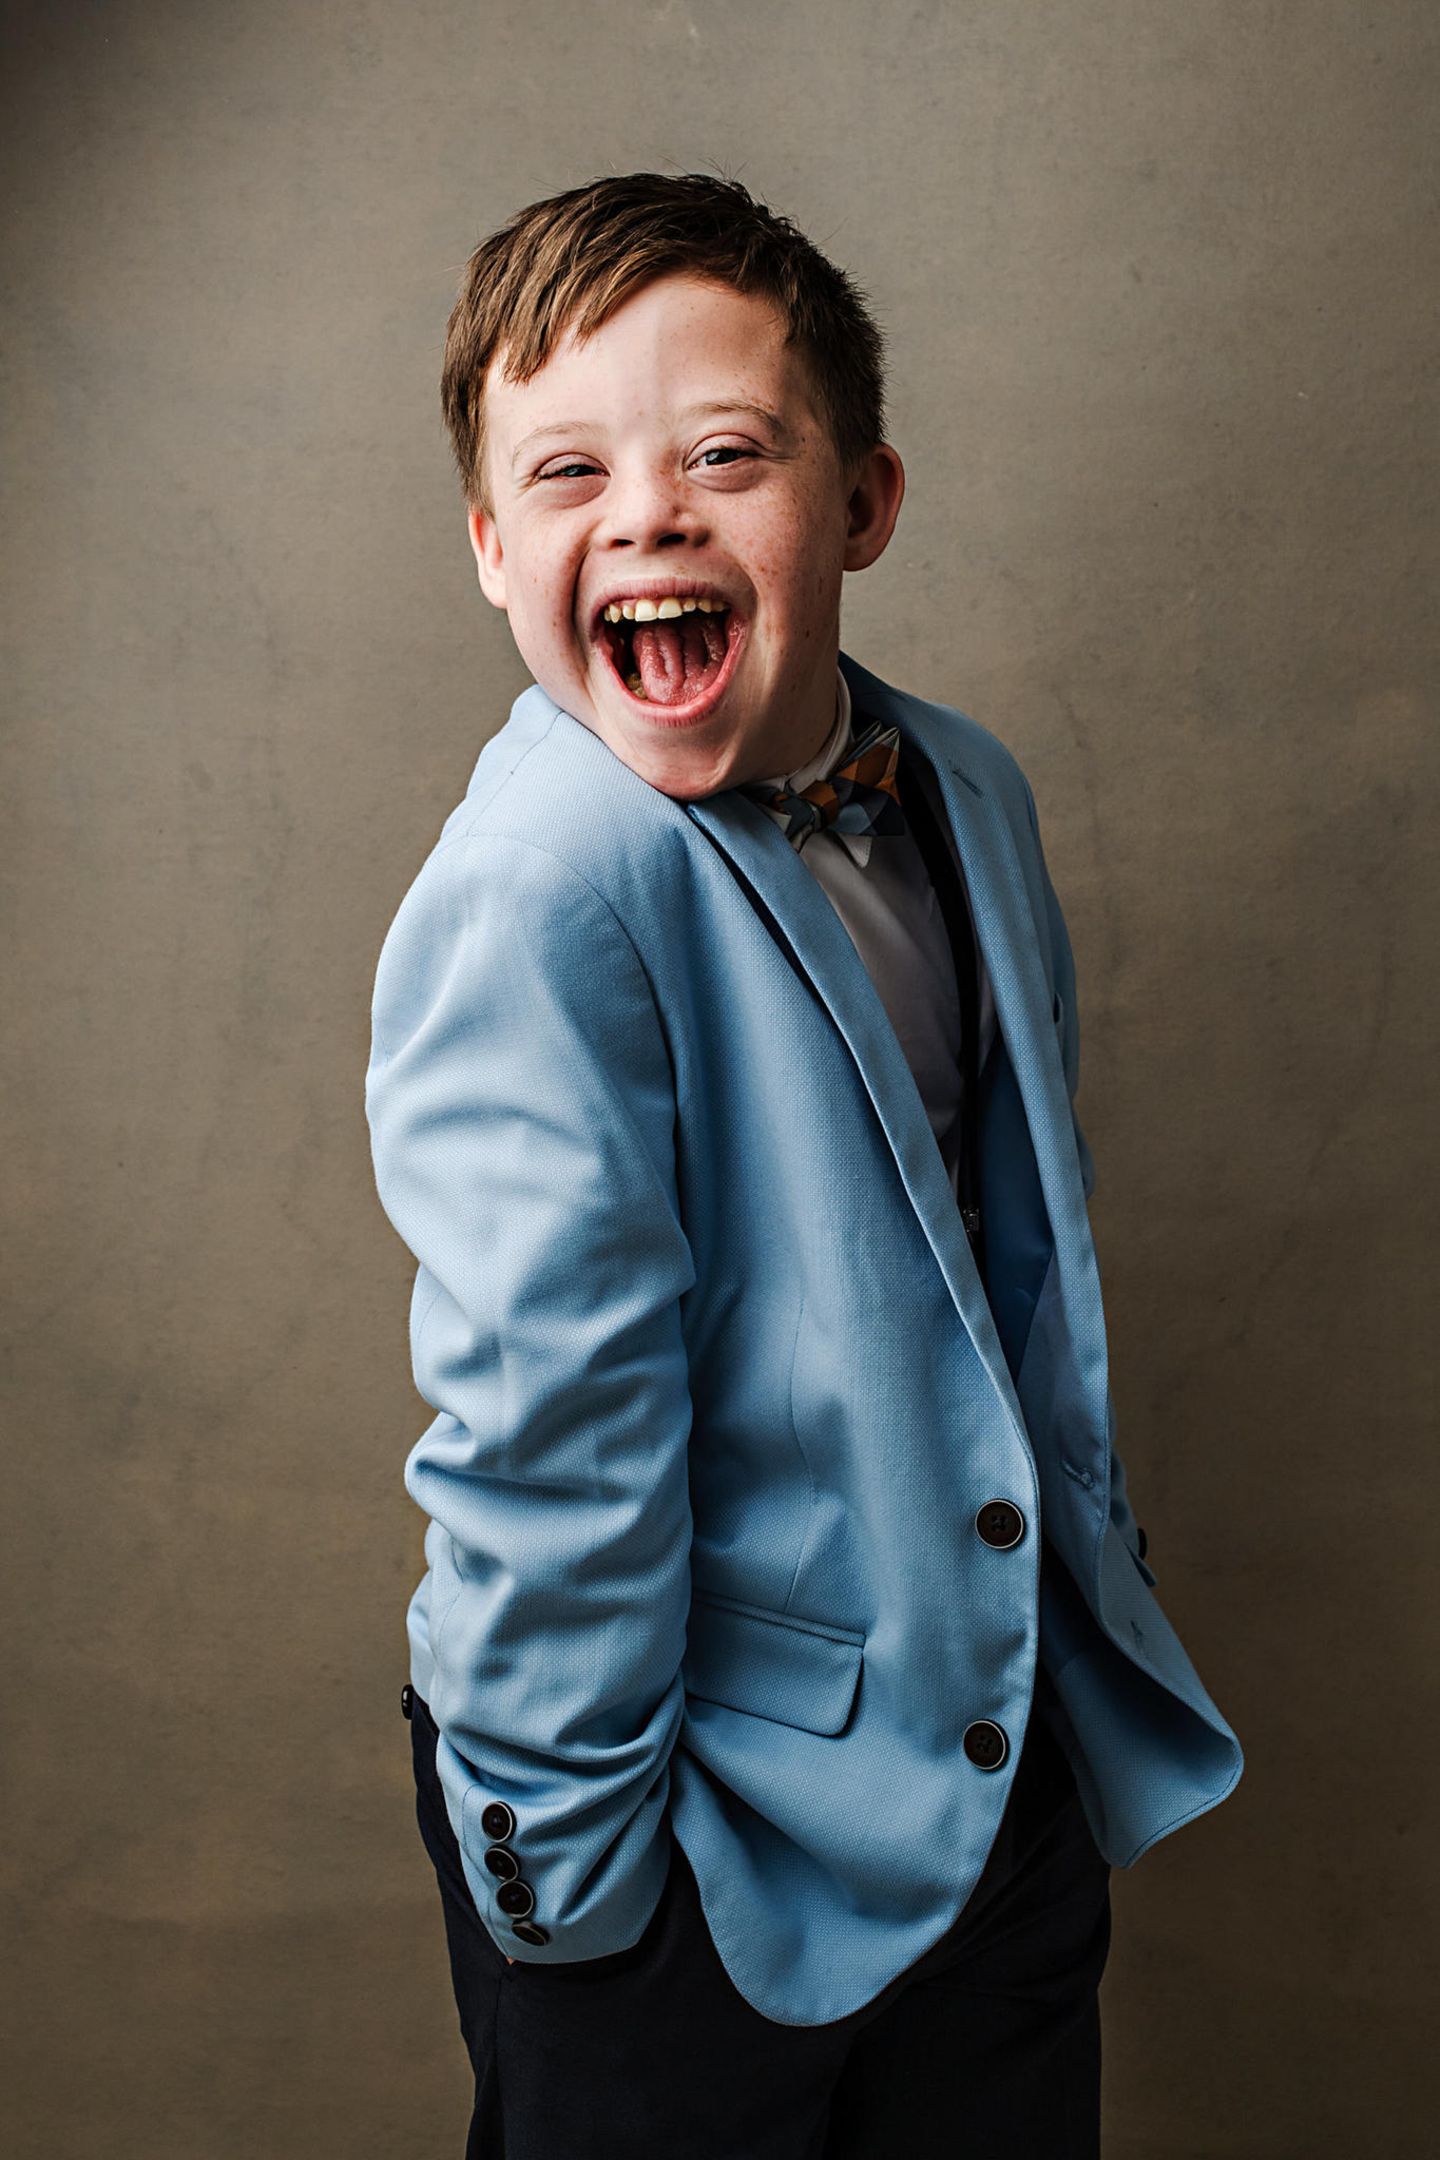 Down-Syndrom: Junge schaut in die Kamera und lacht